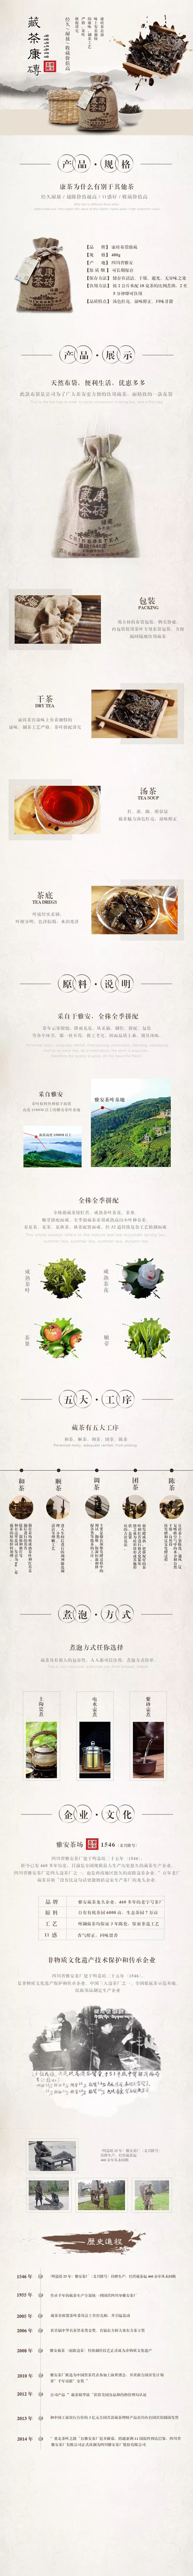 淘宝美工海狸猫茶-复古-中国风详情页作品